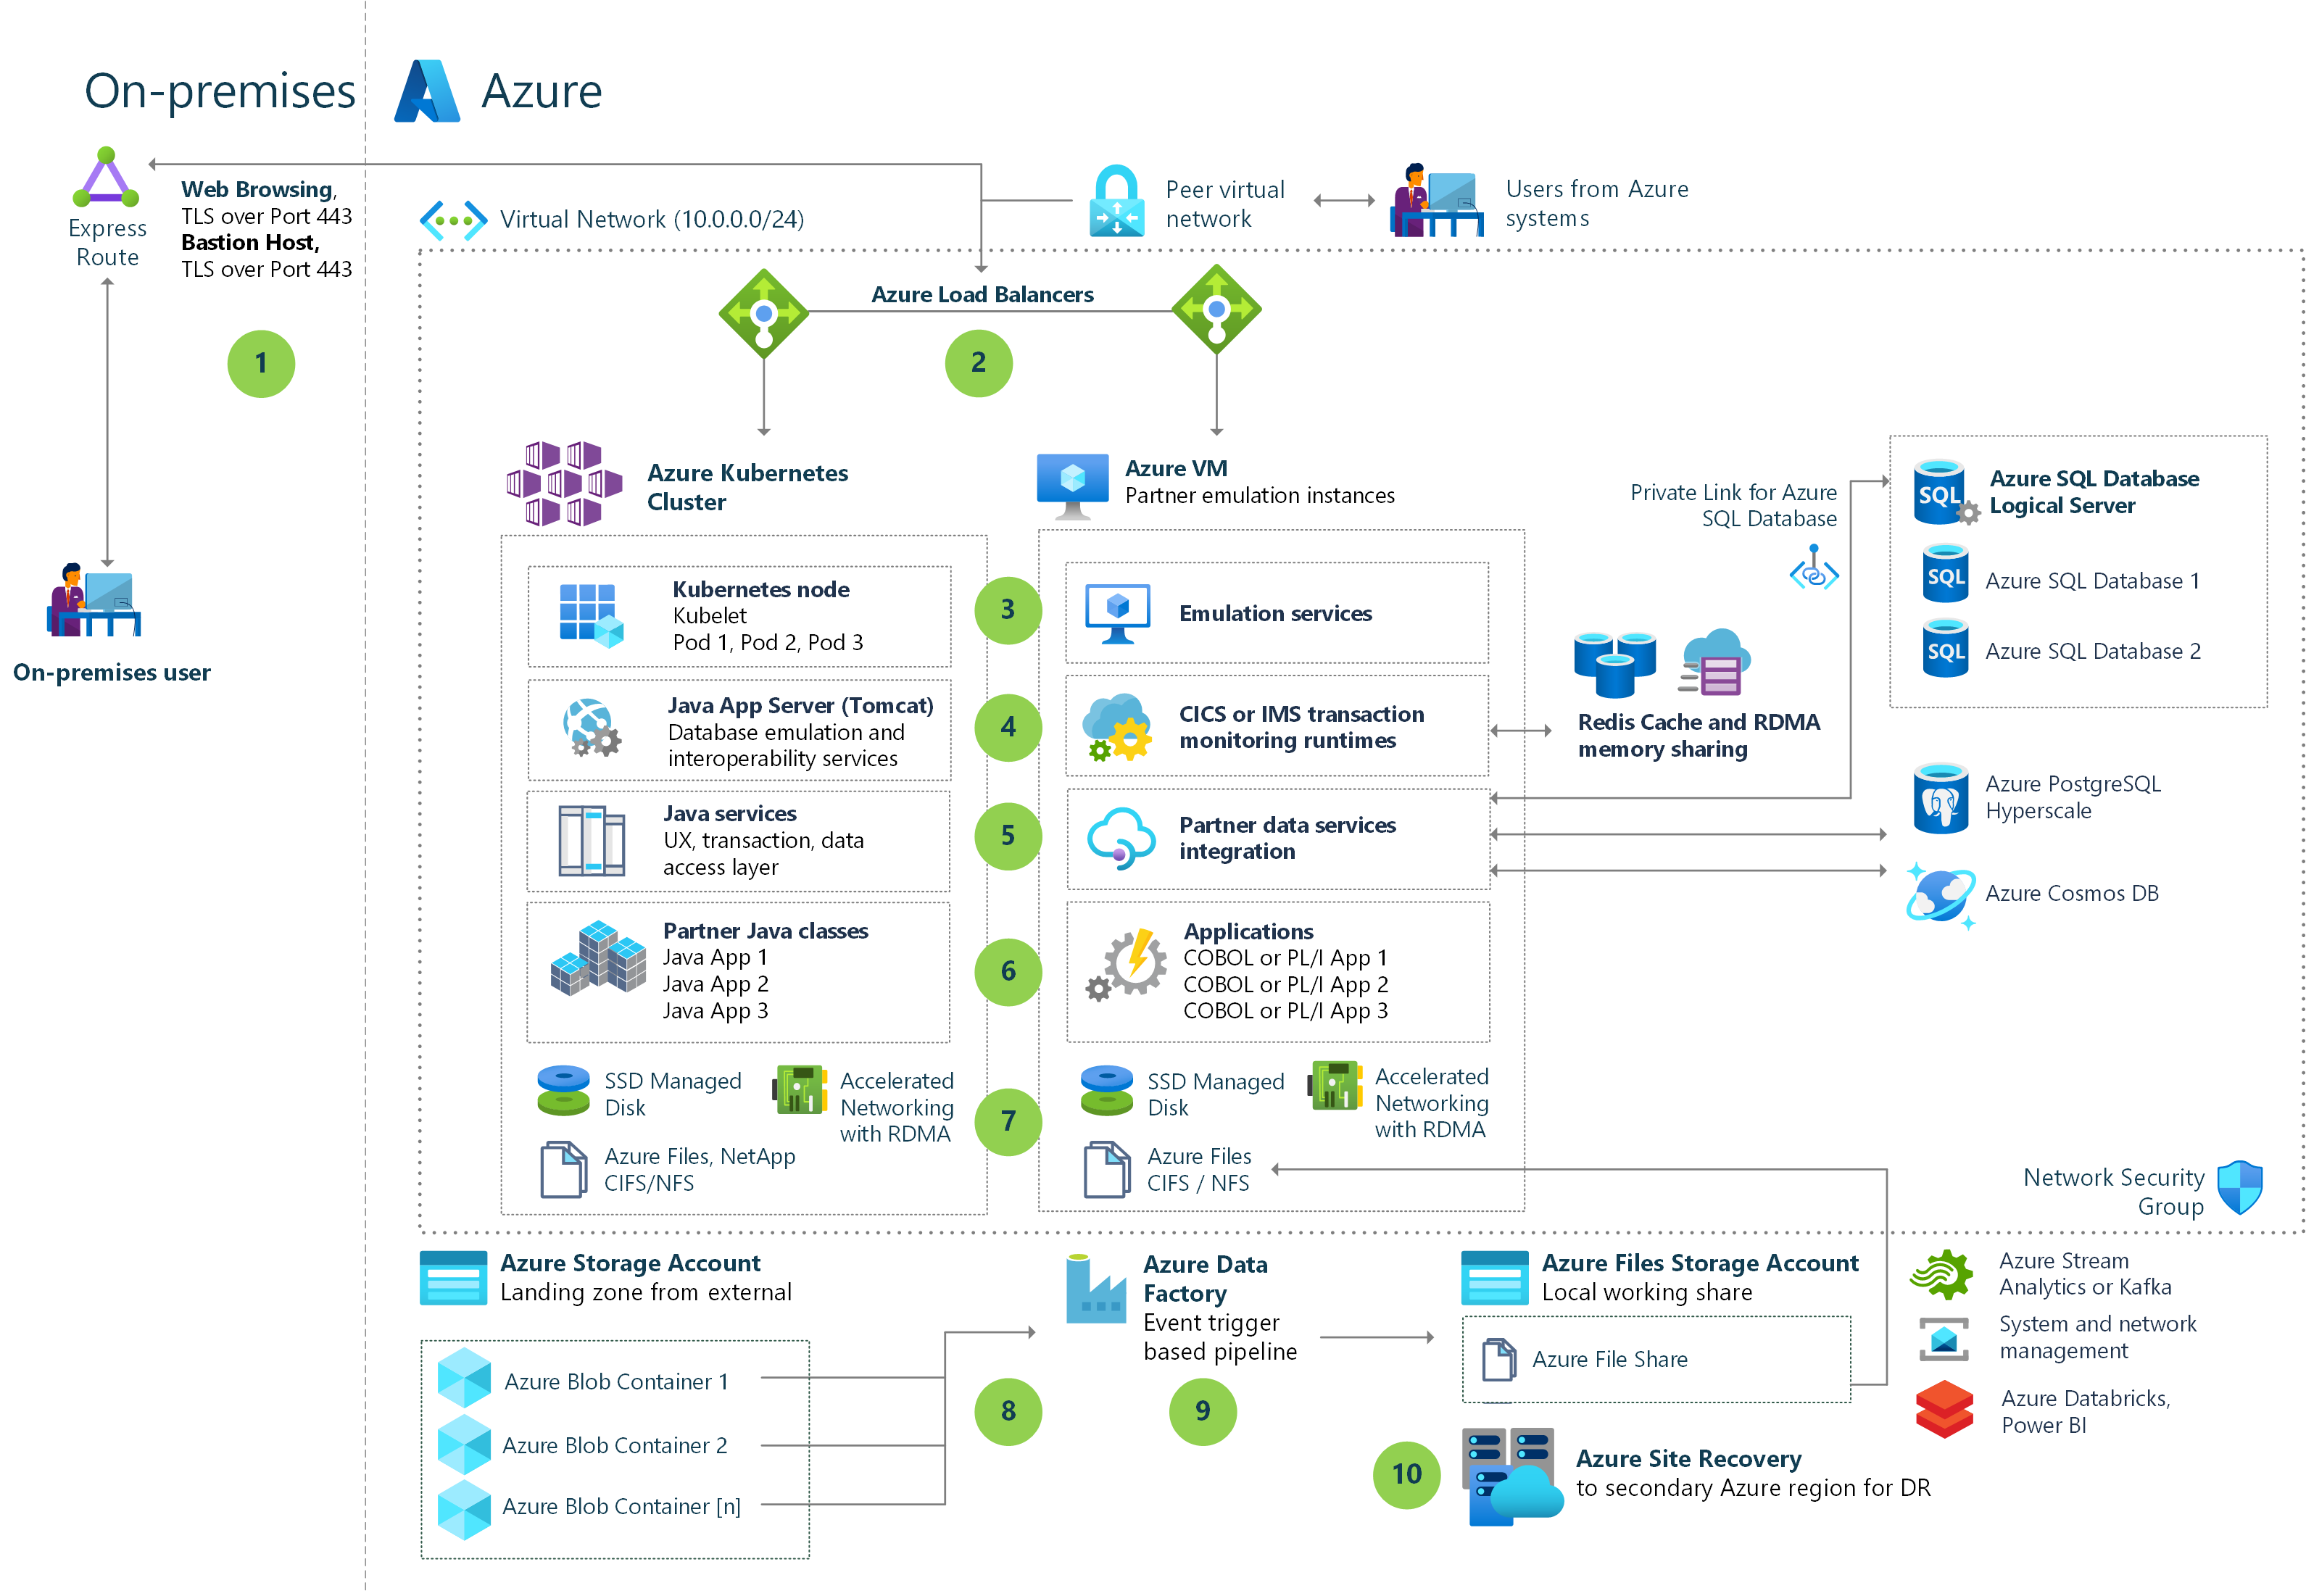 Diagramm: Veranschaulichung der Zuordnung von IBM z/OS-Mainframekomponenten zu Azure-Funktionen